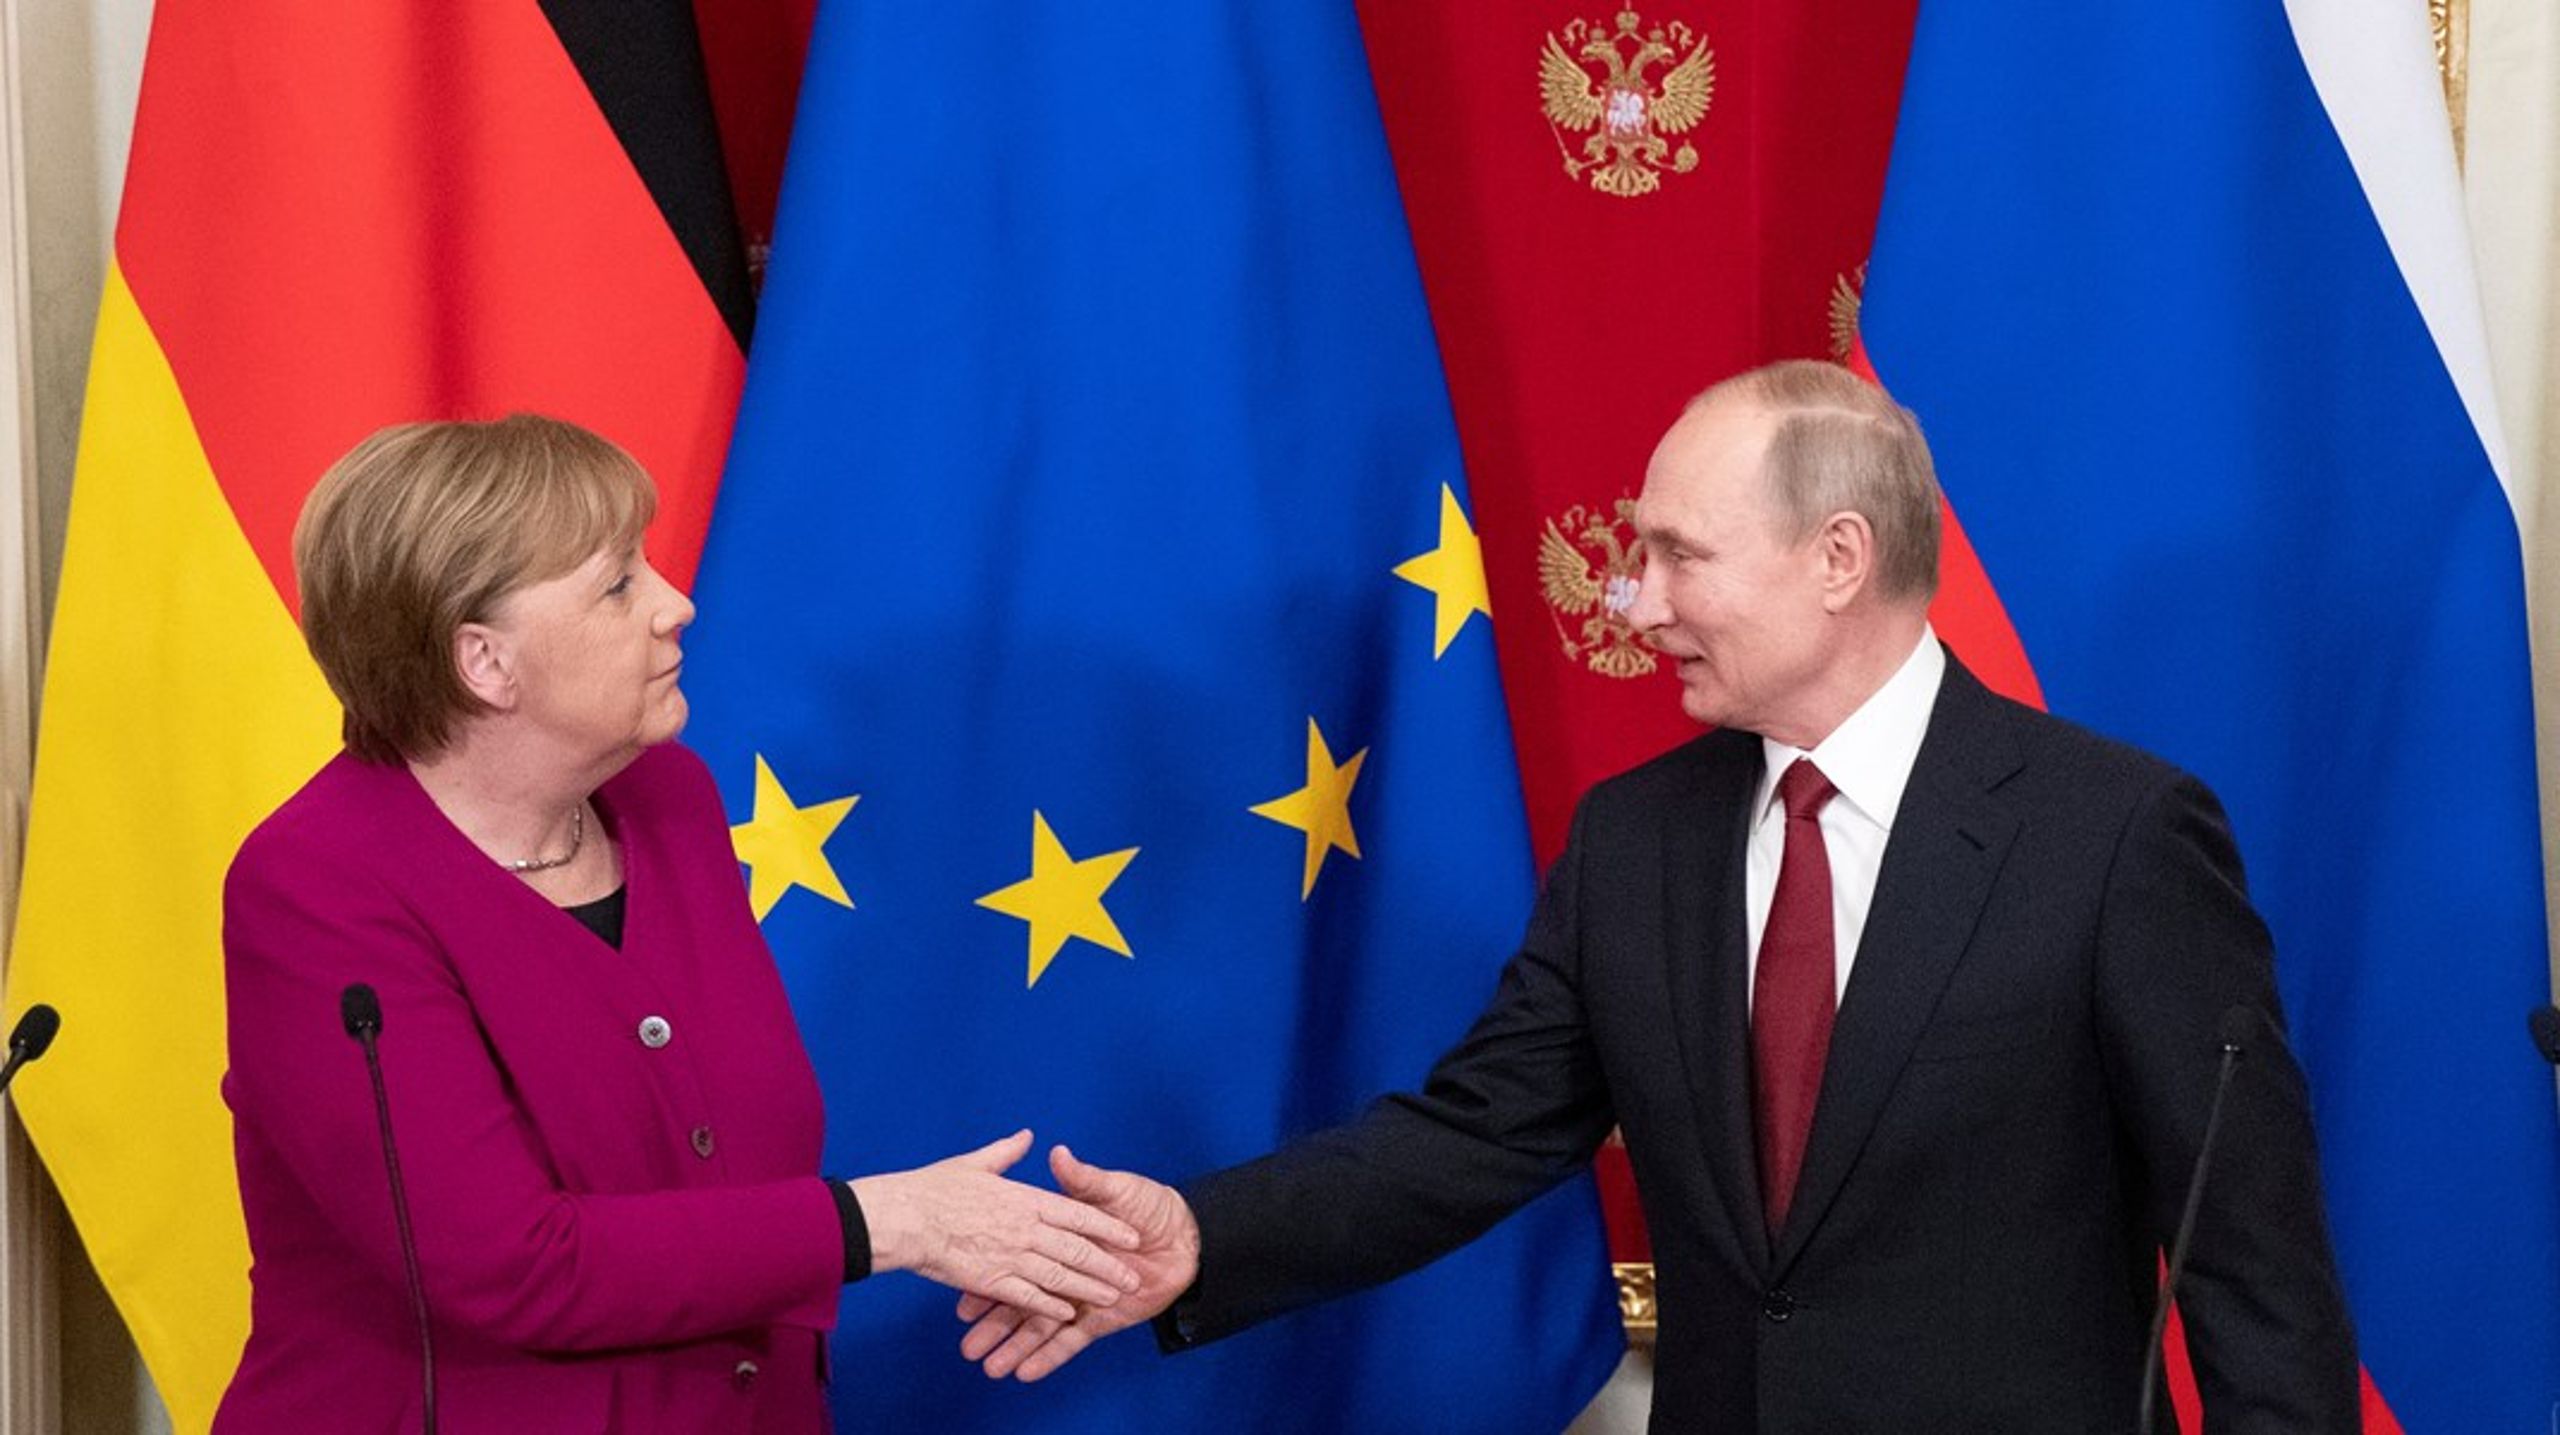 Merkel udøvede fejlagtigt en strategisk eftergivenhed over for et vedvarende aggressivt Rusland, skriver tidligere Nato-ambassadør&nbsp;Andras Simonyi.